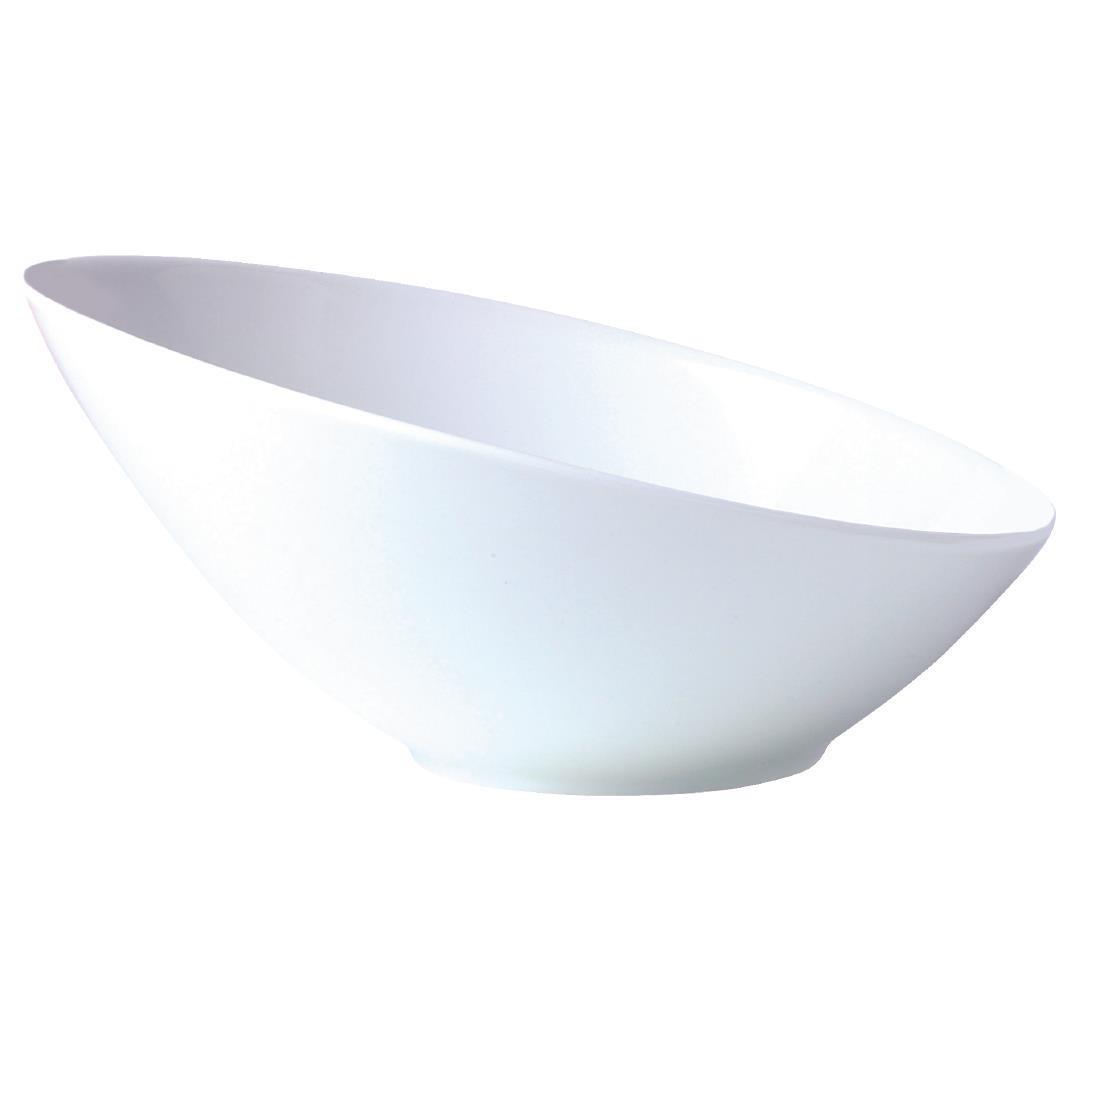 Steelite Sheer White Bowls 145mm (Pack of 12) - V9156  - 1